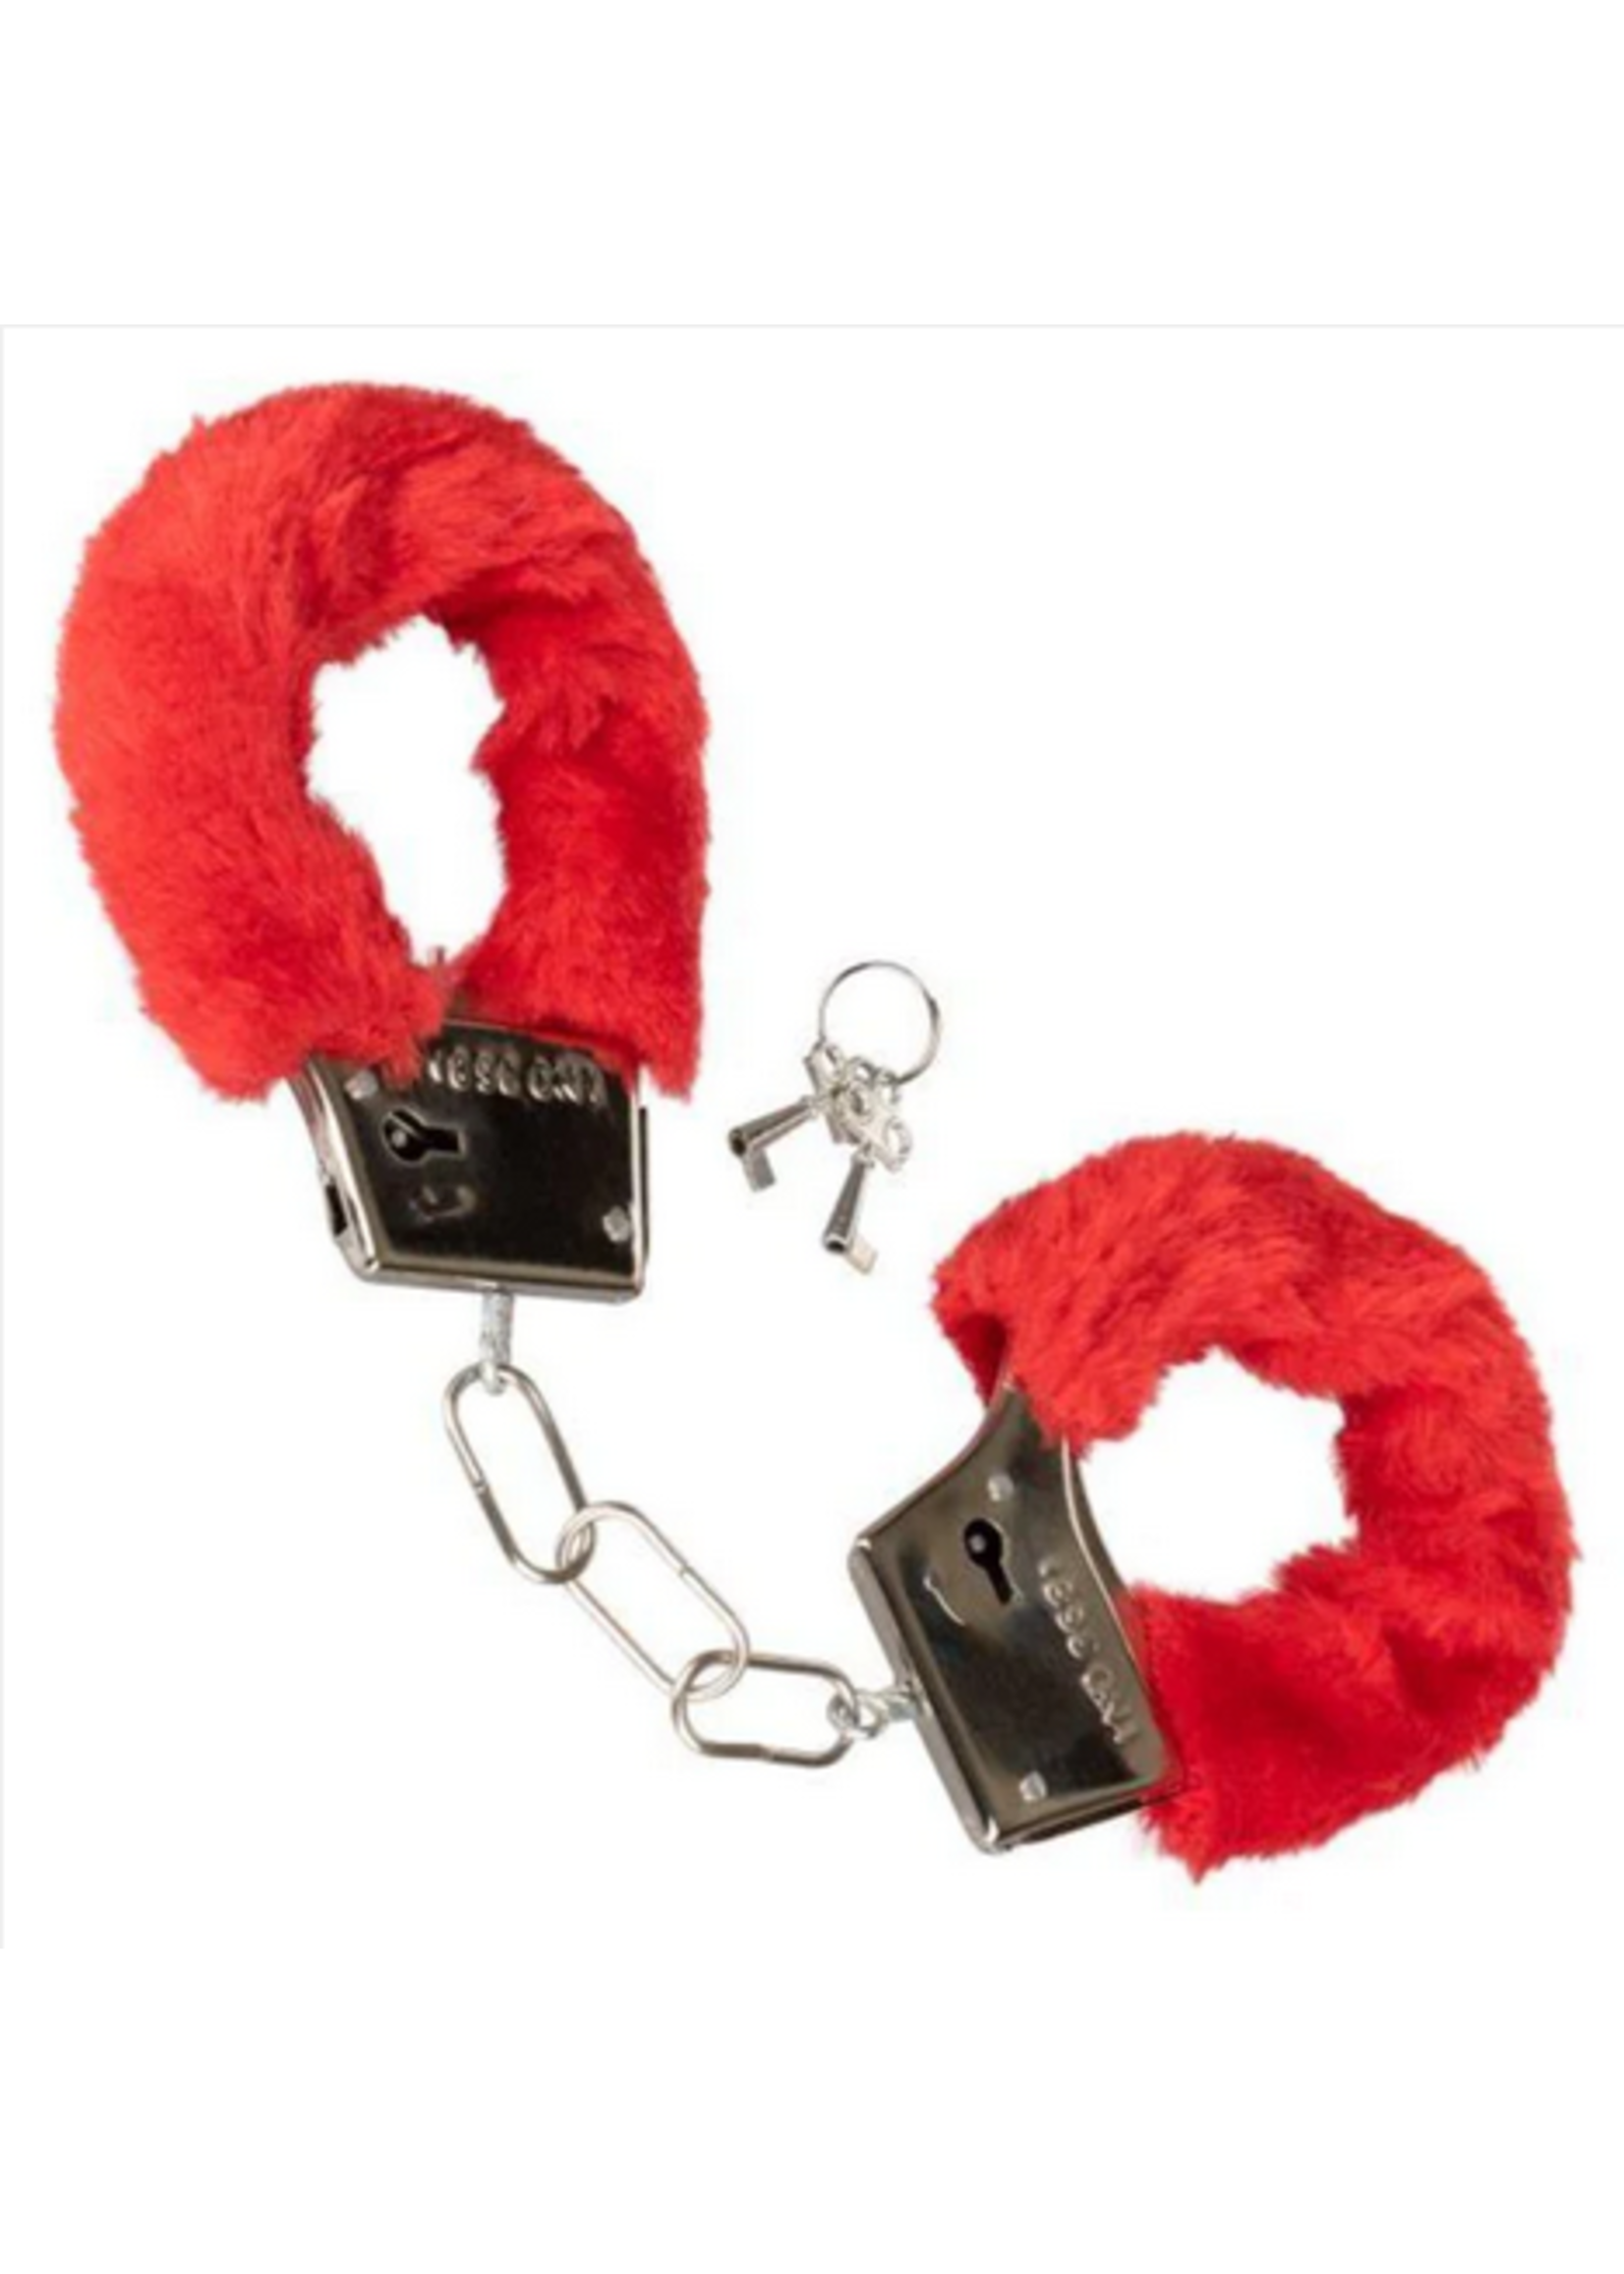 Calexotics Playful Furry Cuffs